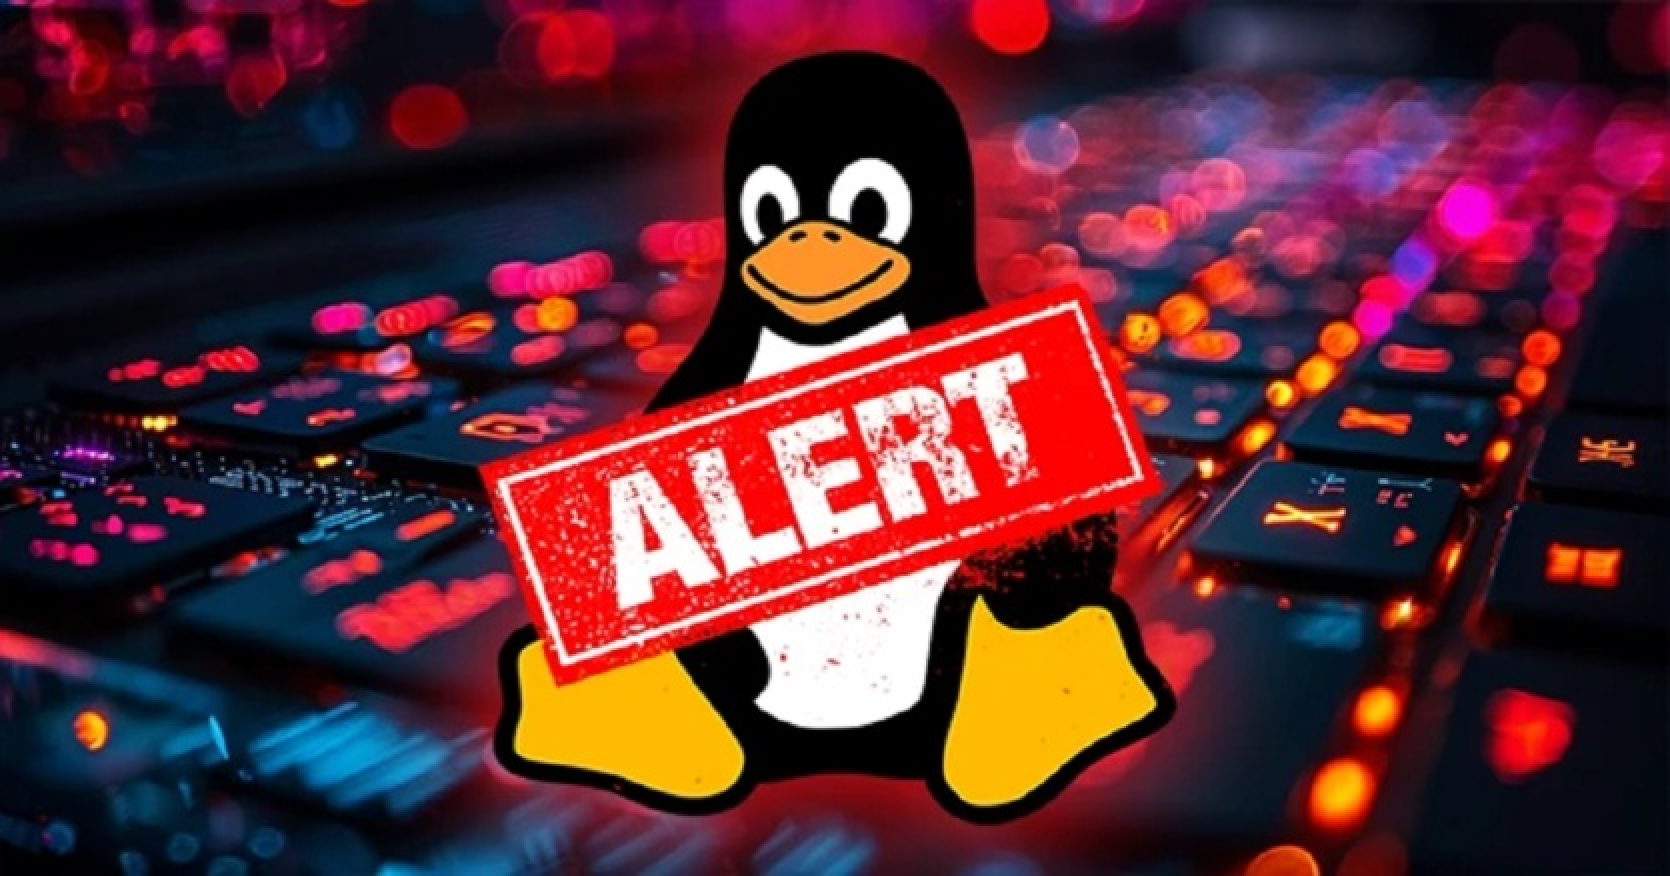 Aizmugurpults atrasts Linux distribūciju xz Utils. Viņi aicina steidzami atteikties no Fedora